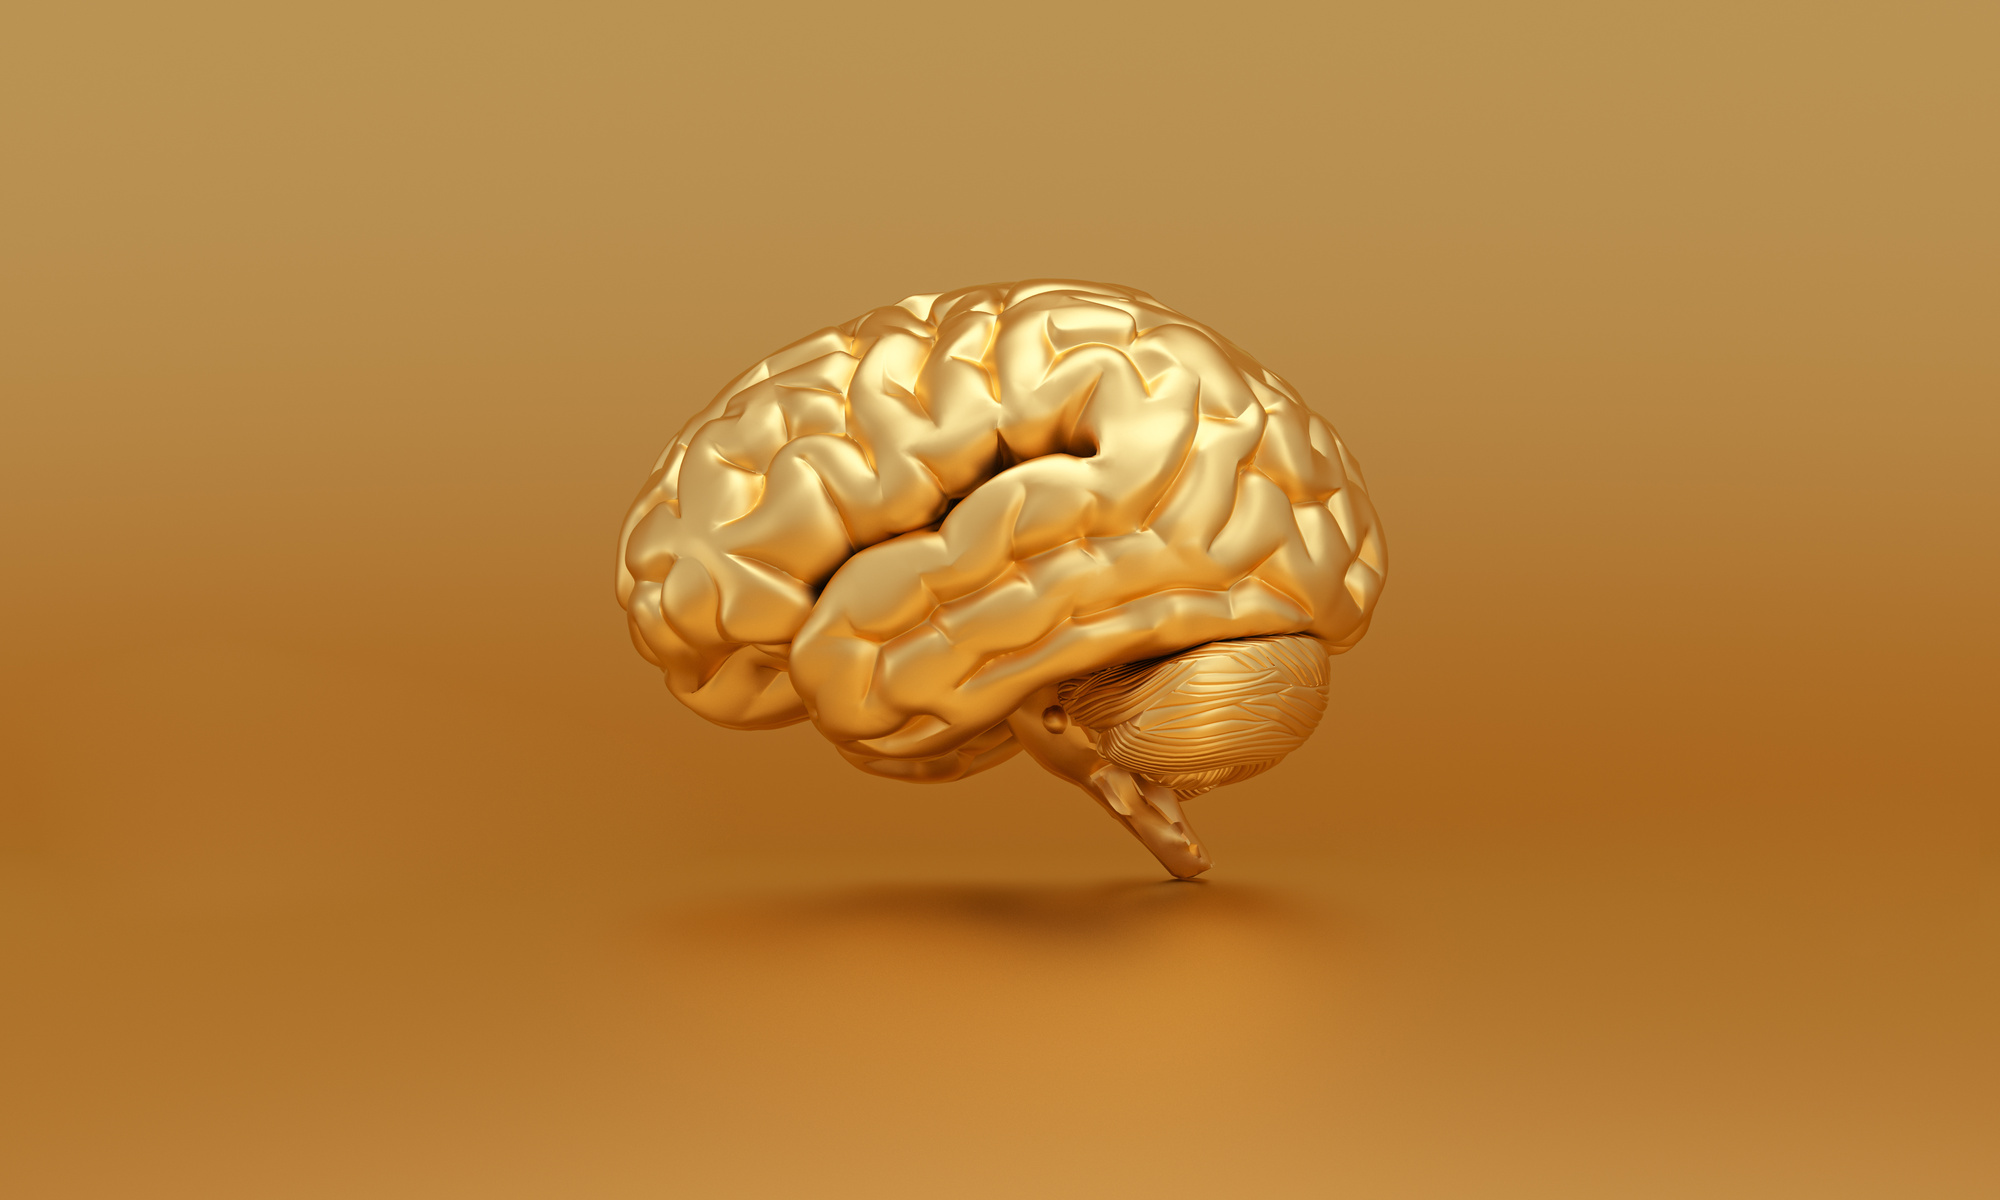 Golden brain on gold background, thinking, genius concept.